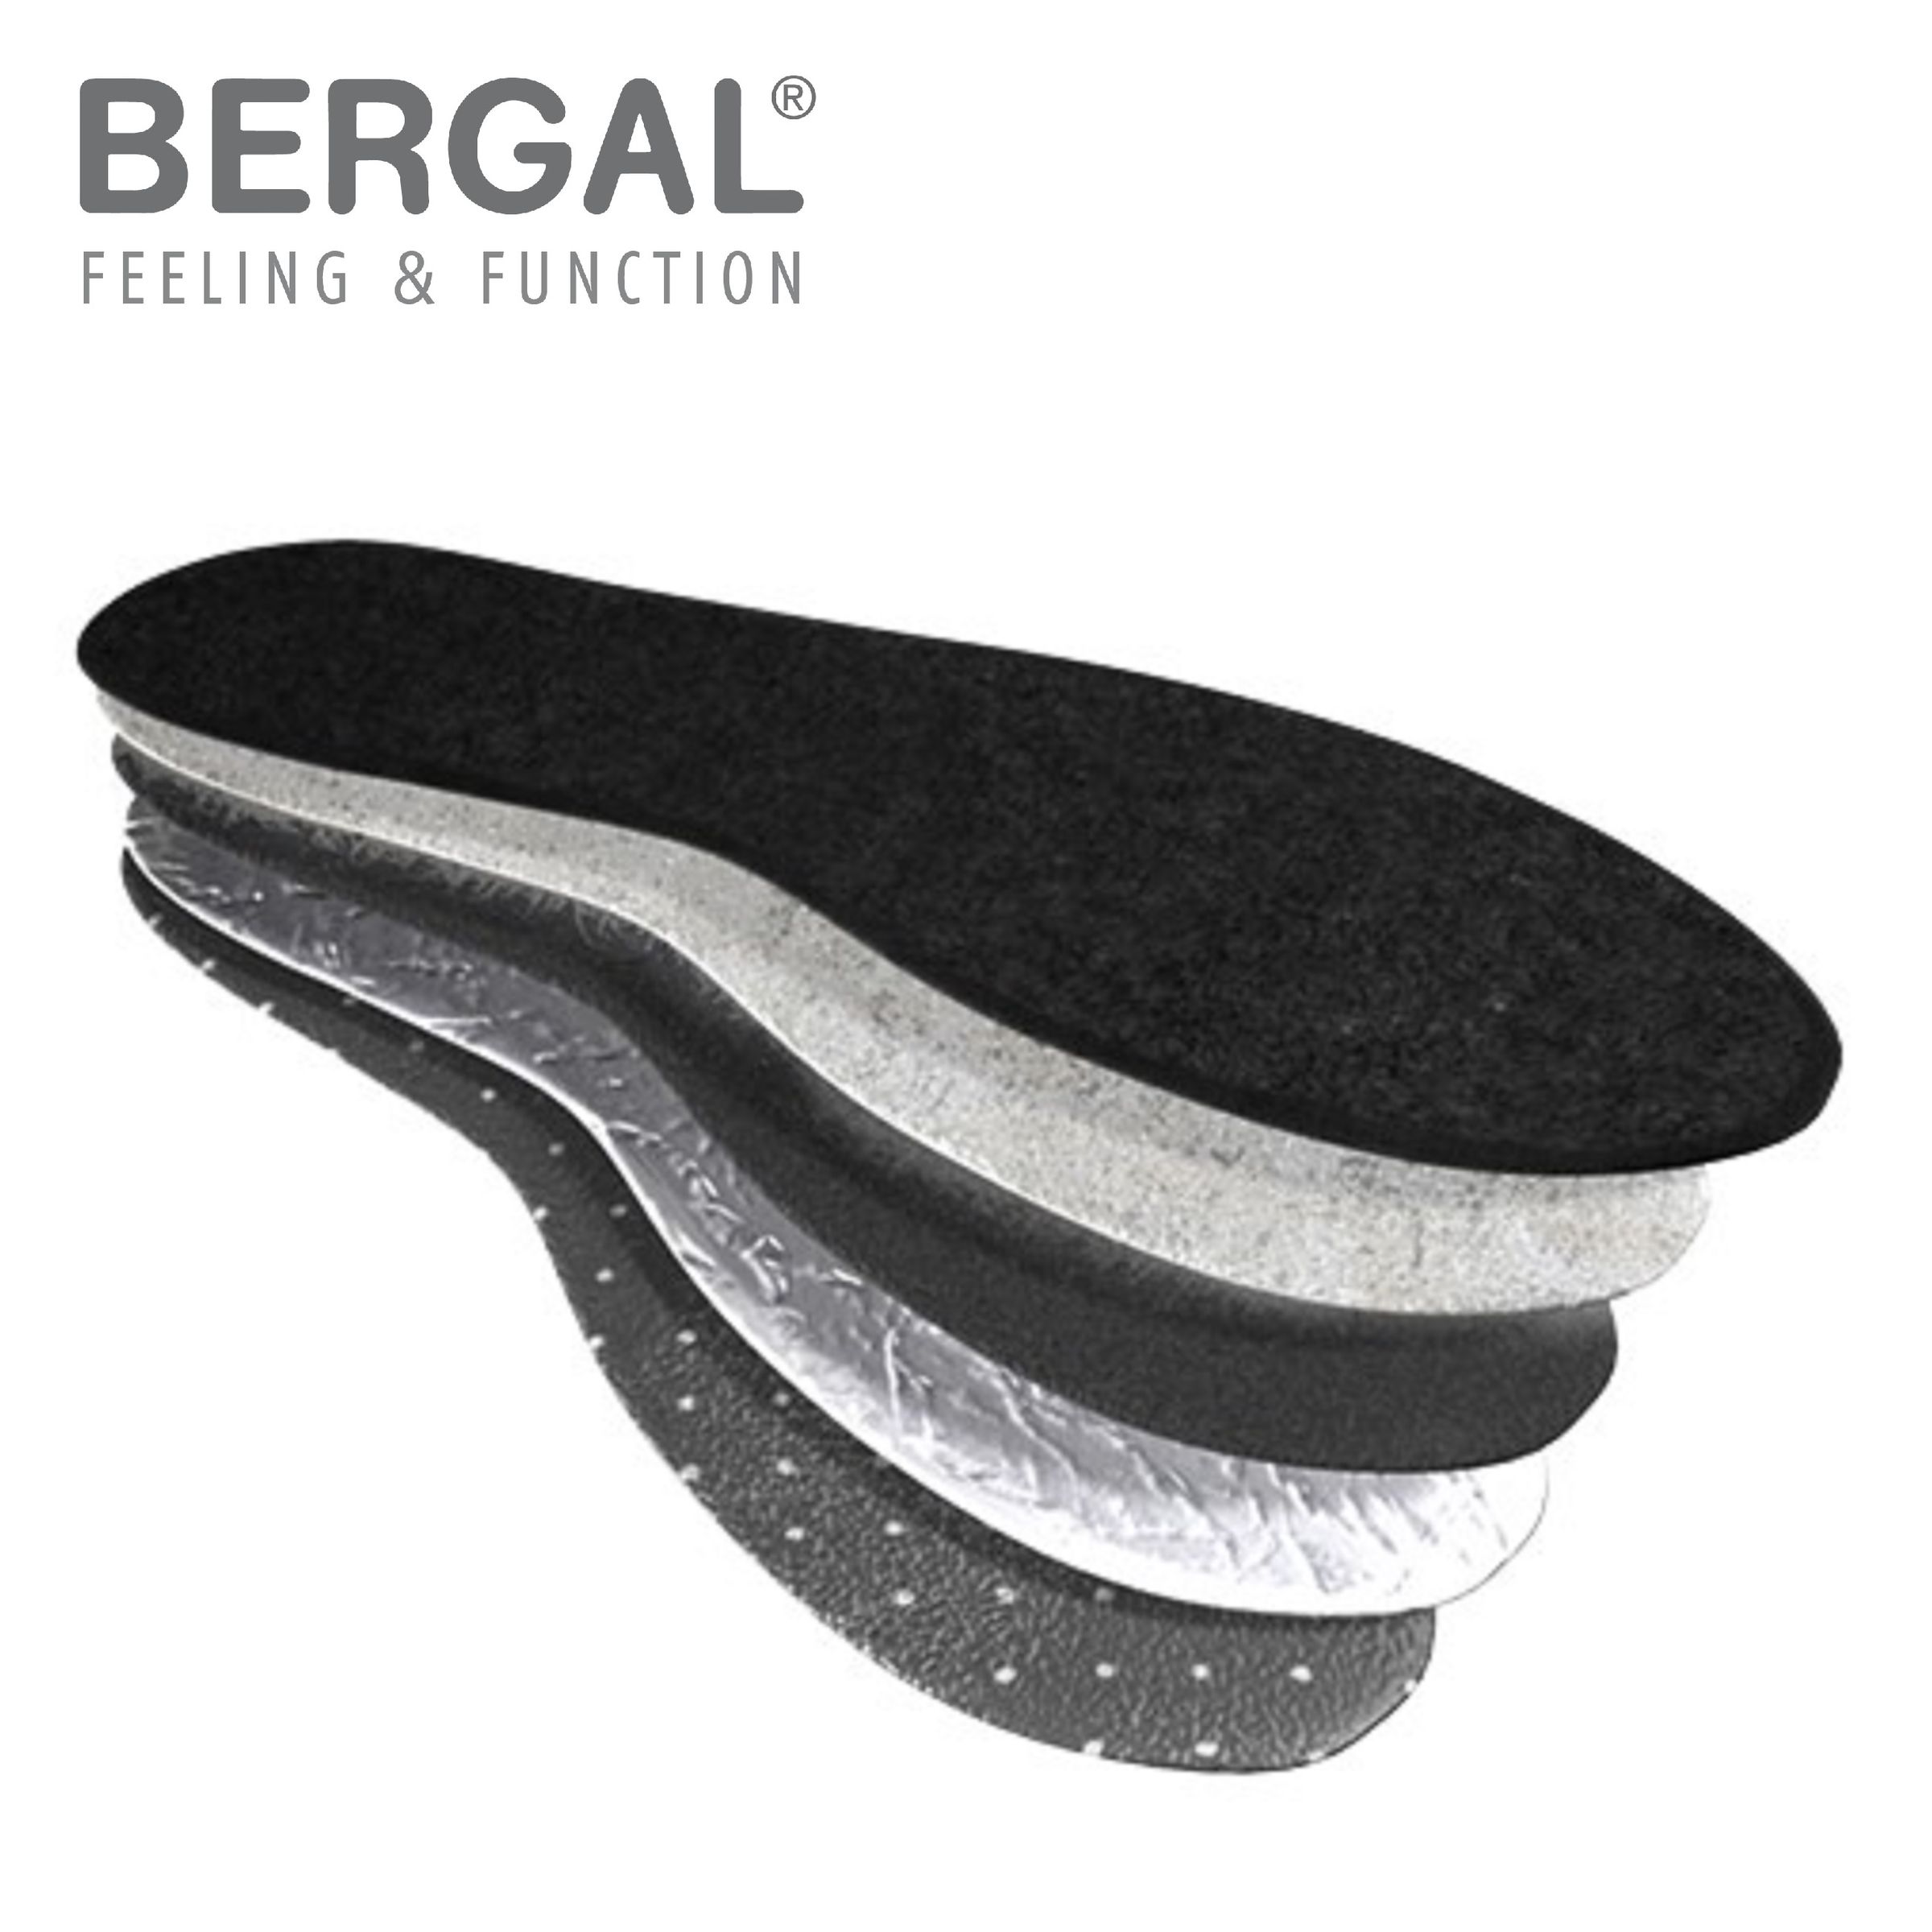 Bergal 6 Paar Thermo Soft wärmende Winter Schuh-Einlage, Einlegesohle mit High-Tech-Funktionsfaser PrimaLoft 